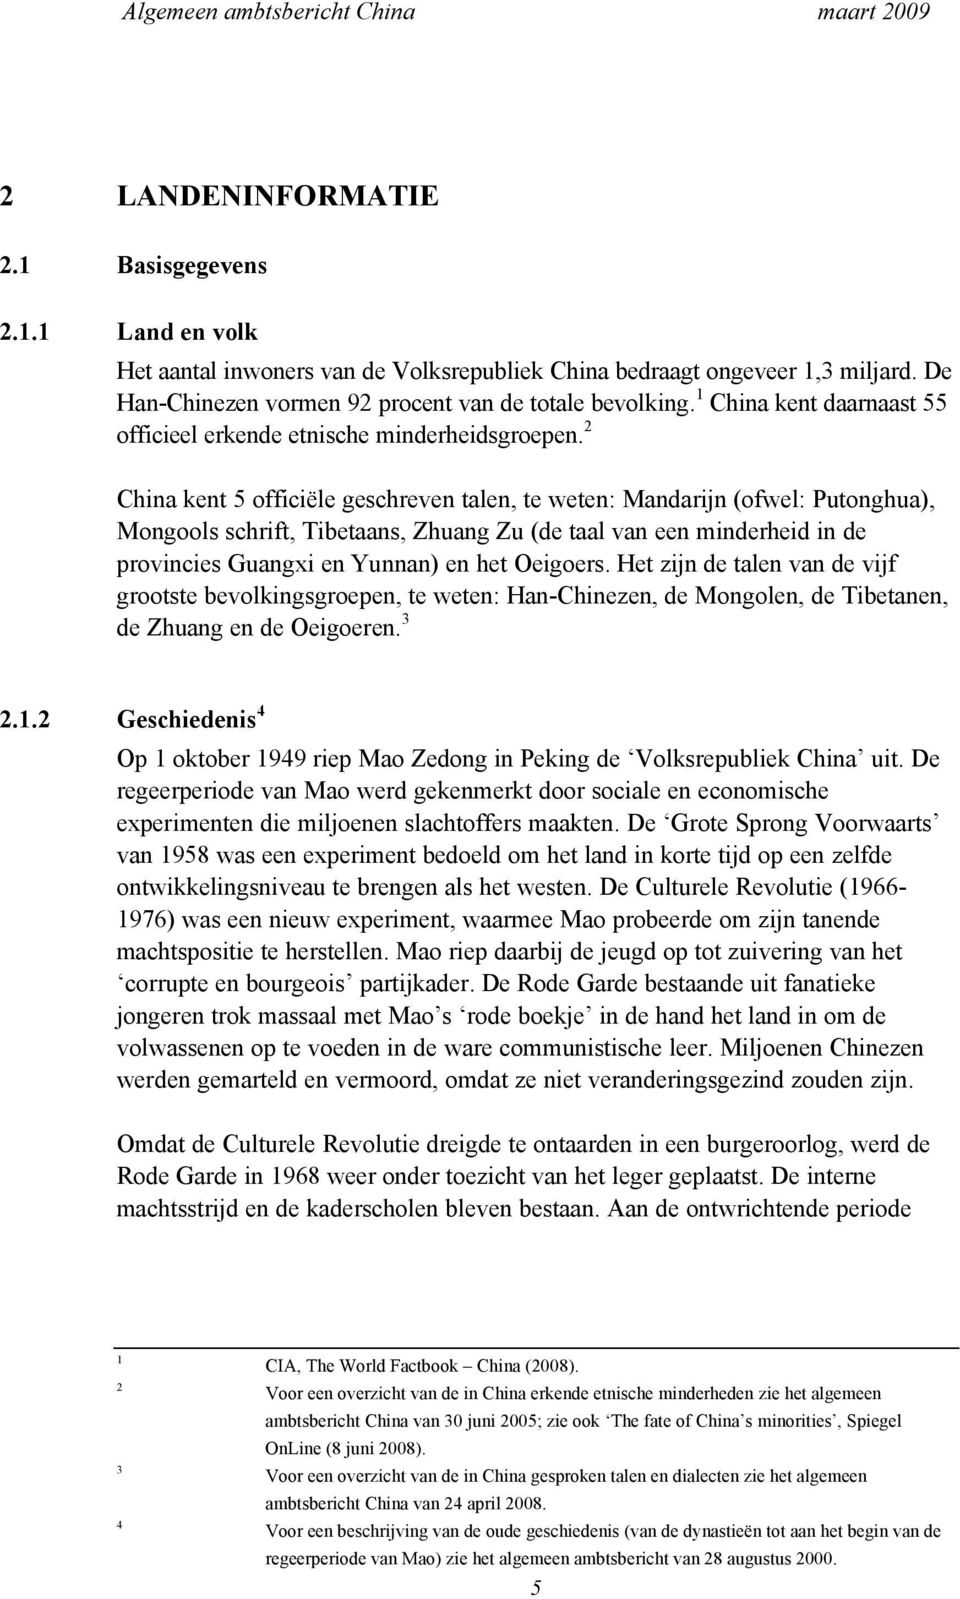 2 China kent 5 officiële geschreven talen, te weten: Mandarijn (ofwel: Putonghua), Mongools schrift, Tibetaans, Zhuang Zu (de taal van een minderheid in de provincies Guangxi en Yunnan) en het